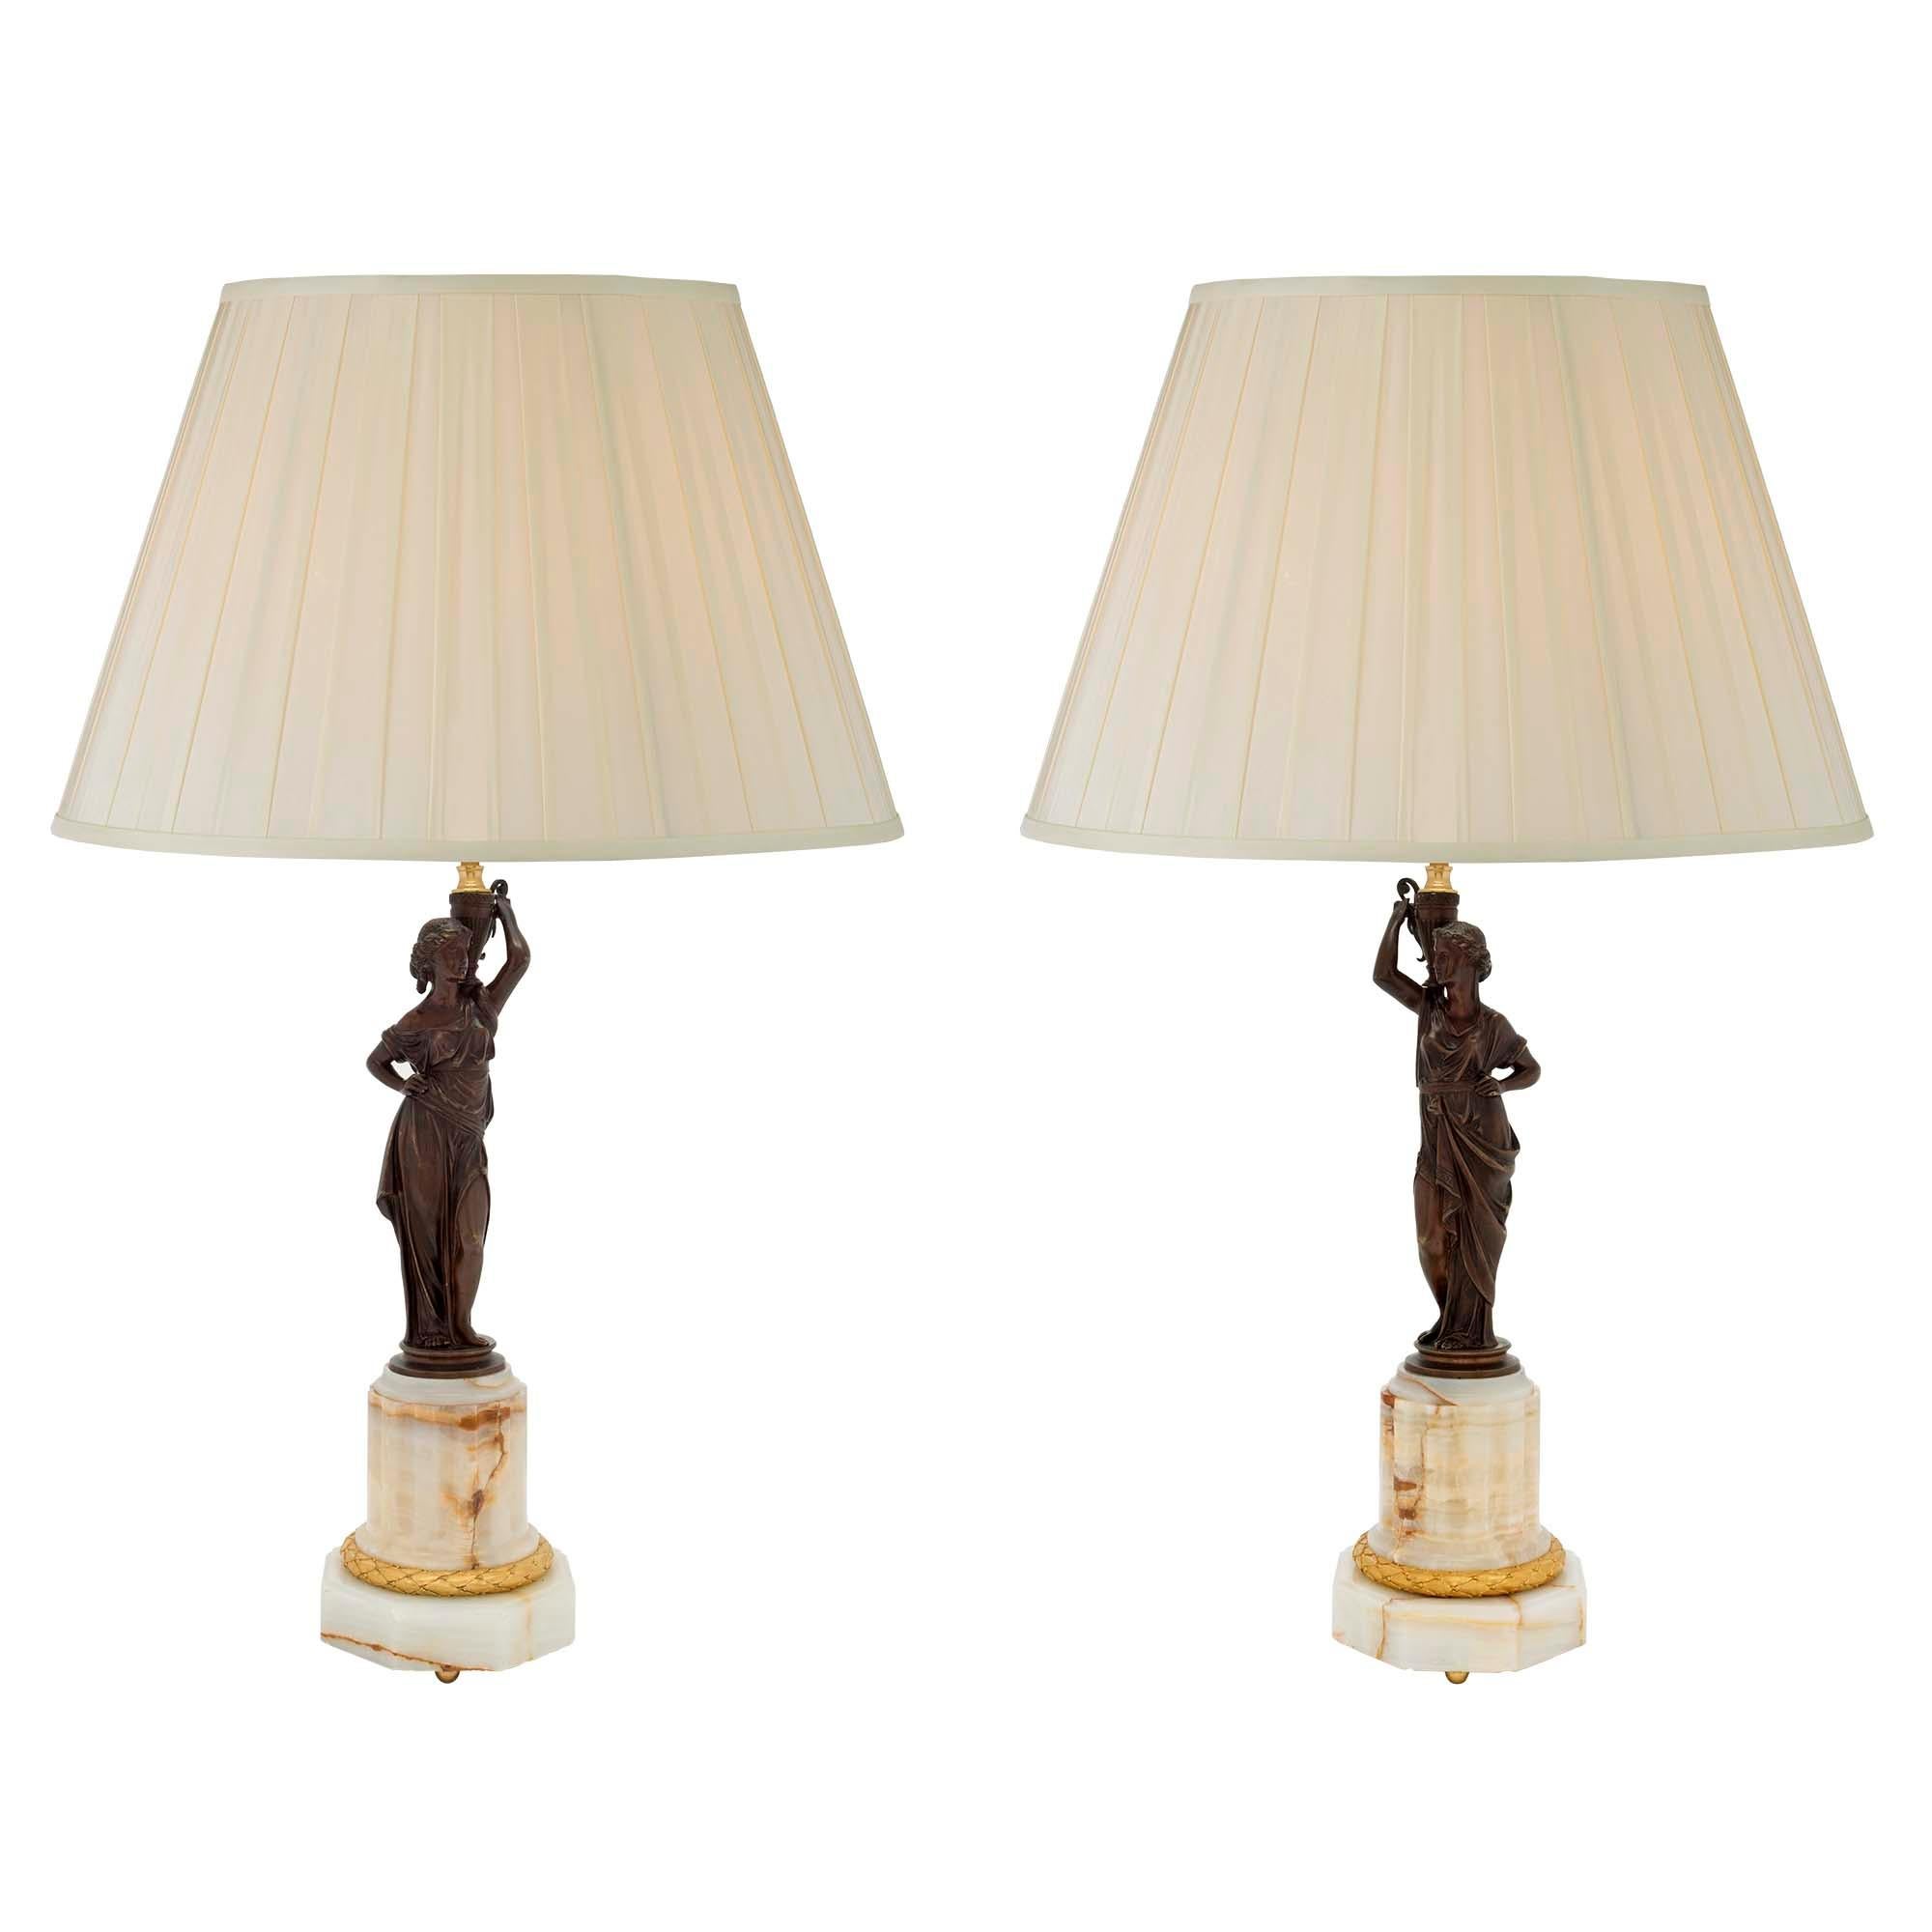 Une paire extrêmement élégante de lampes néoclassiques françaises du 19ème siècle en onyx, bronze doré et bronze patiné. Chaque lampe est surélevée par une base octogonale en onyx avec des pieds à boule en bronze doré, sous un bandeau en bronze doré